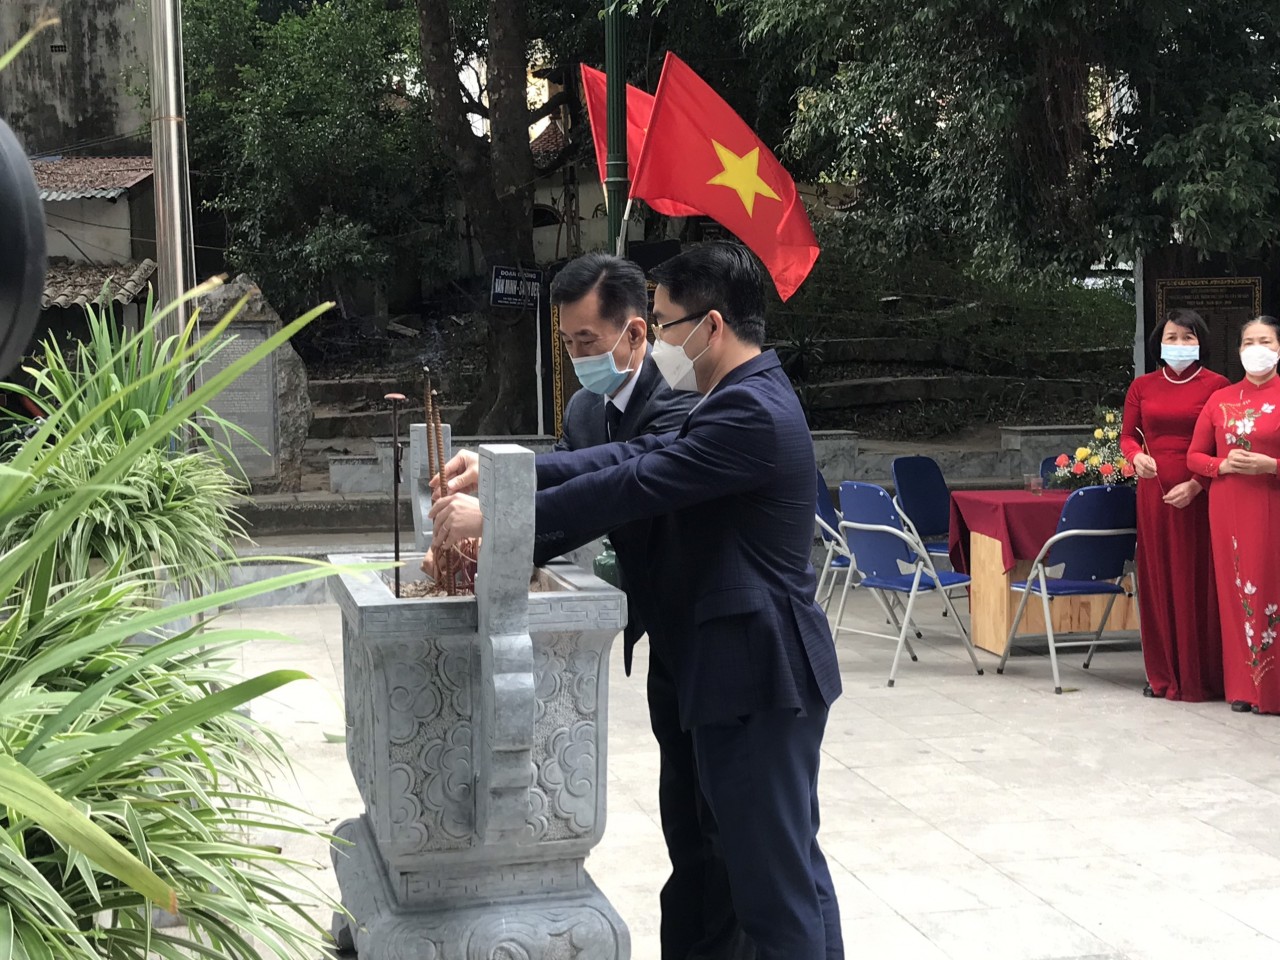 Hợp tác xã Việt - Triều: Nơi minh chứng quan hệ hữu nghị hai nước